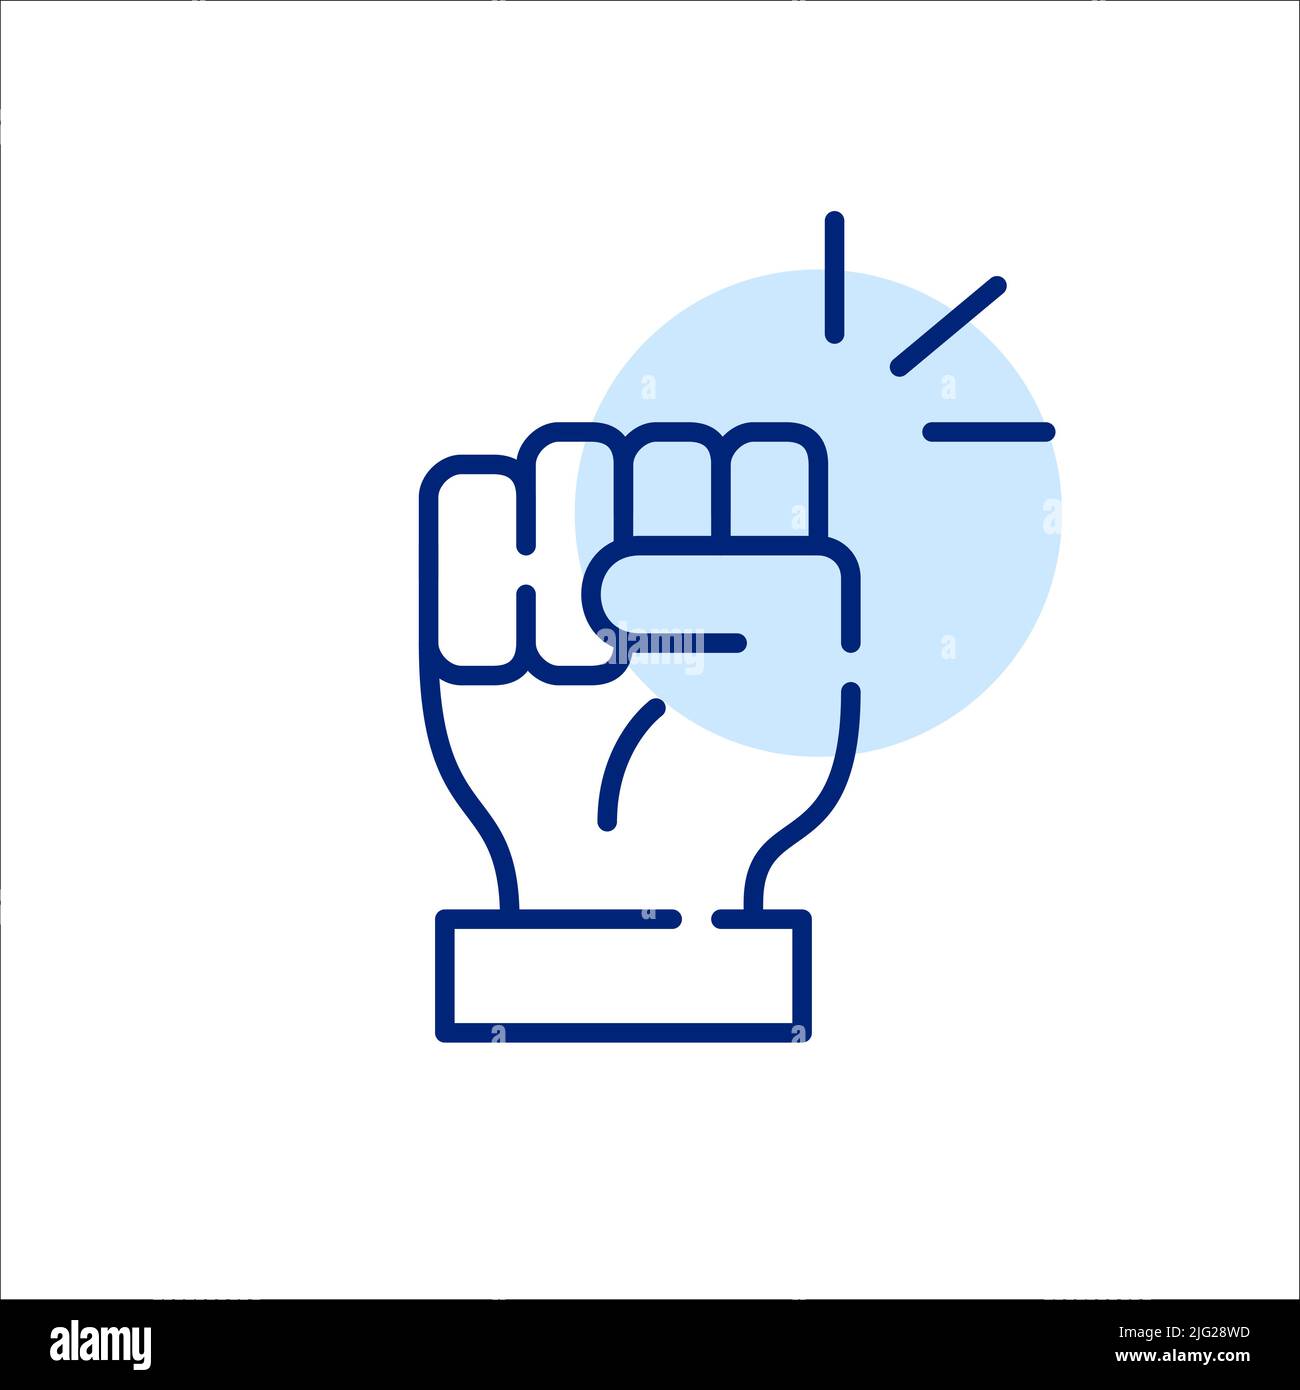 Gesto con el puño hacia arriba. Preparados para luchar y protestar para proteger los derechos. Icono de gráfico de línea de trazo editable y Pixel Perfect Ilustración del Vector